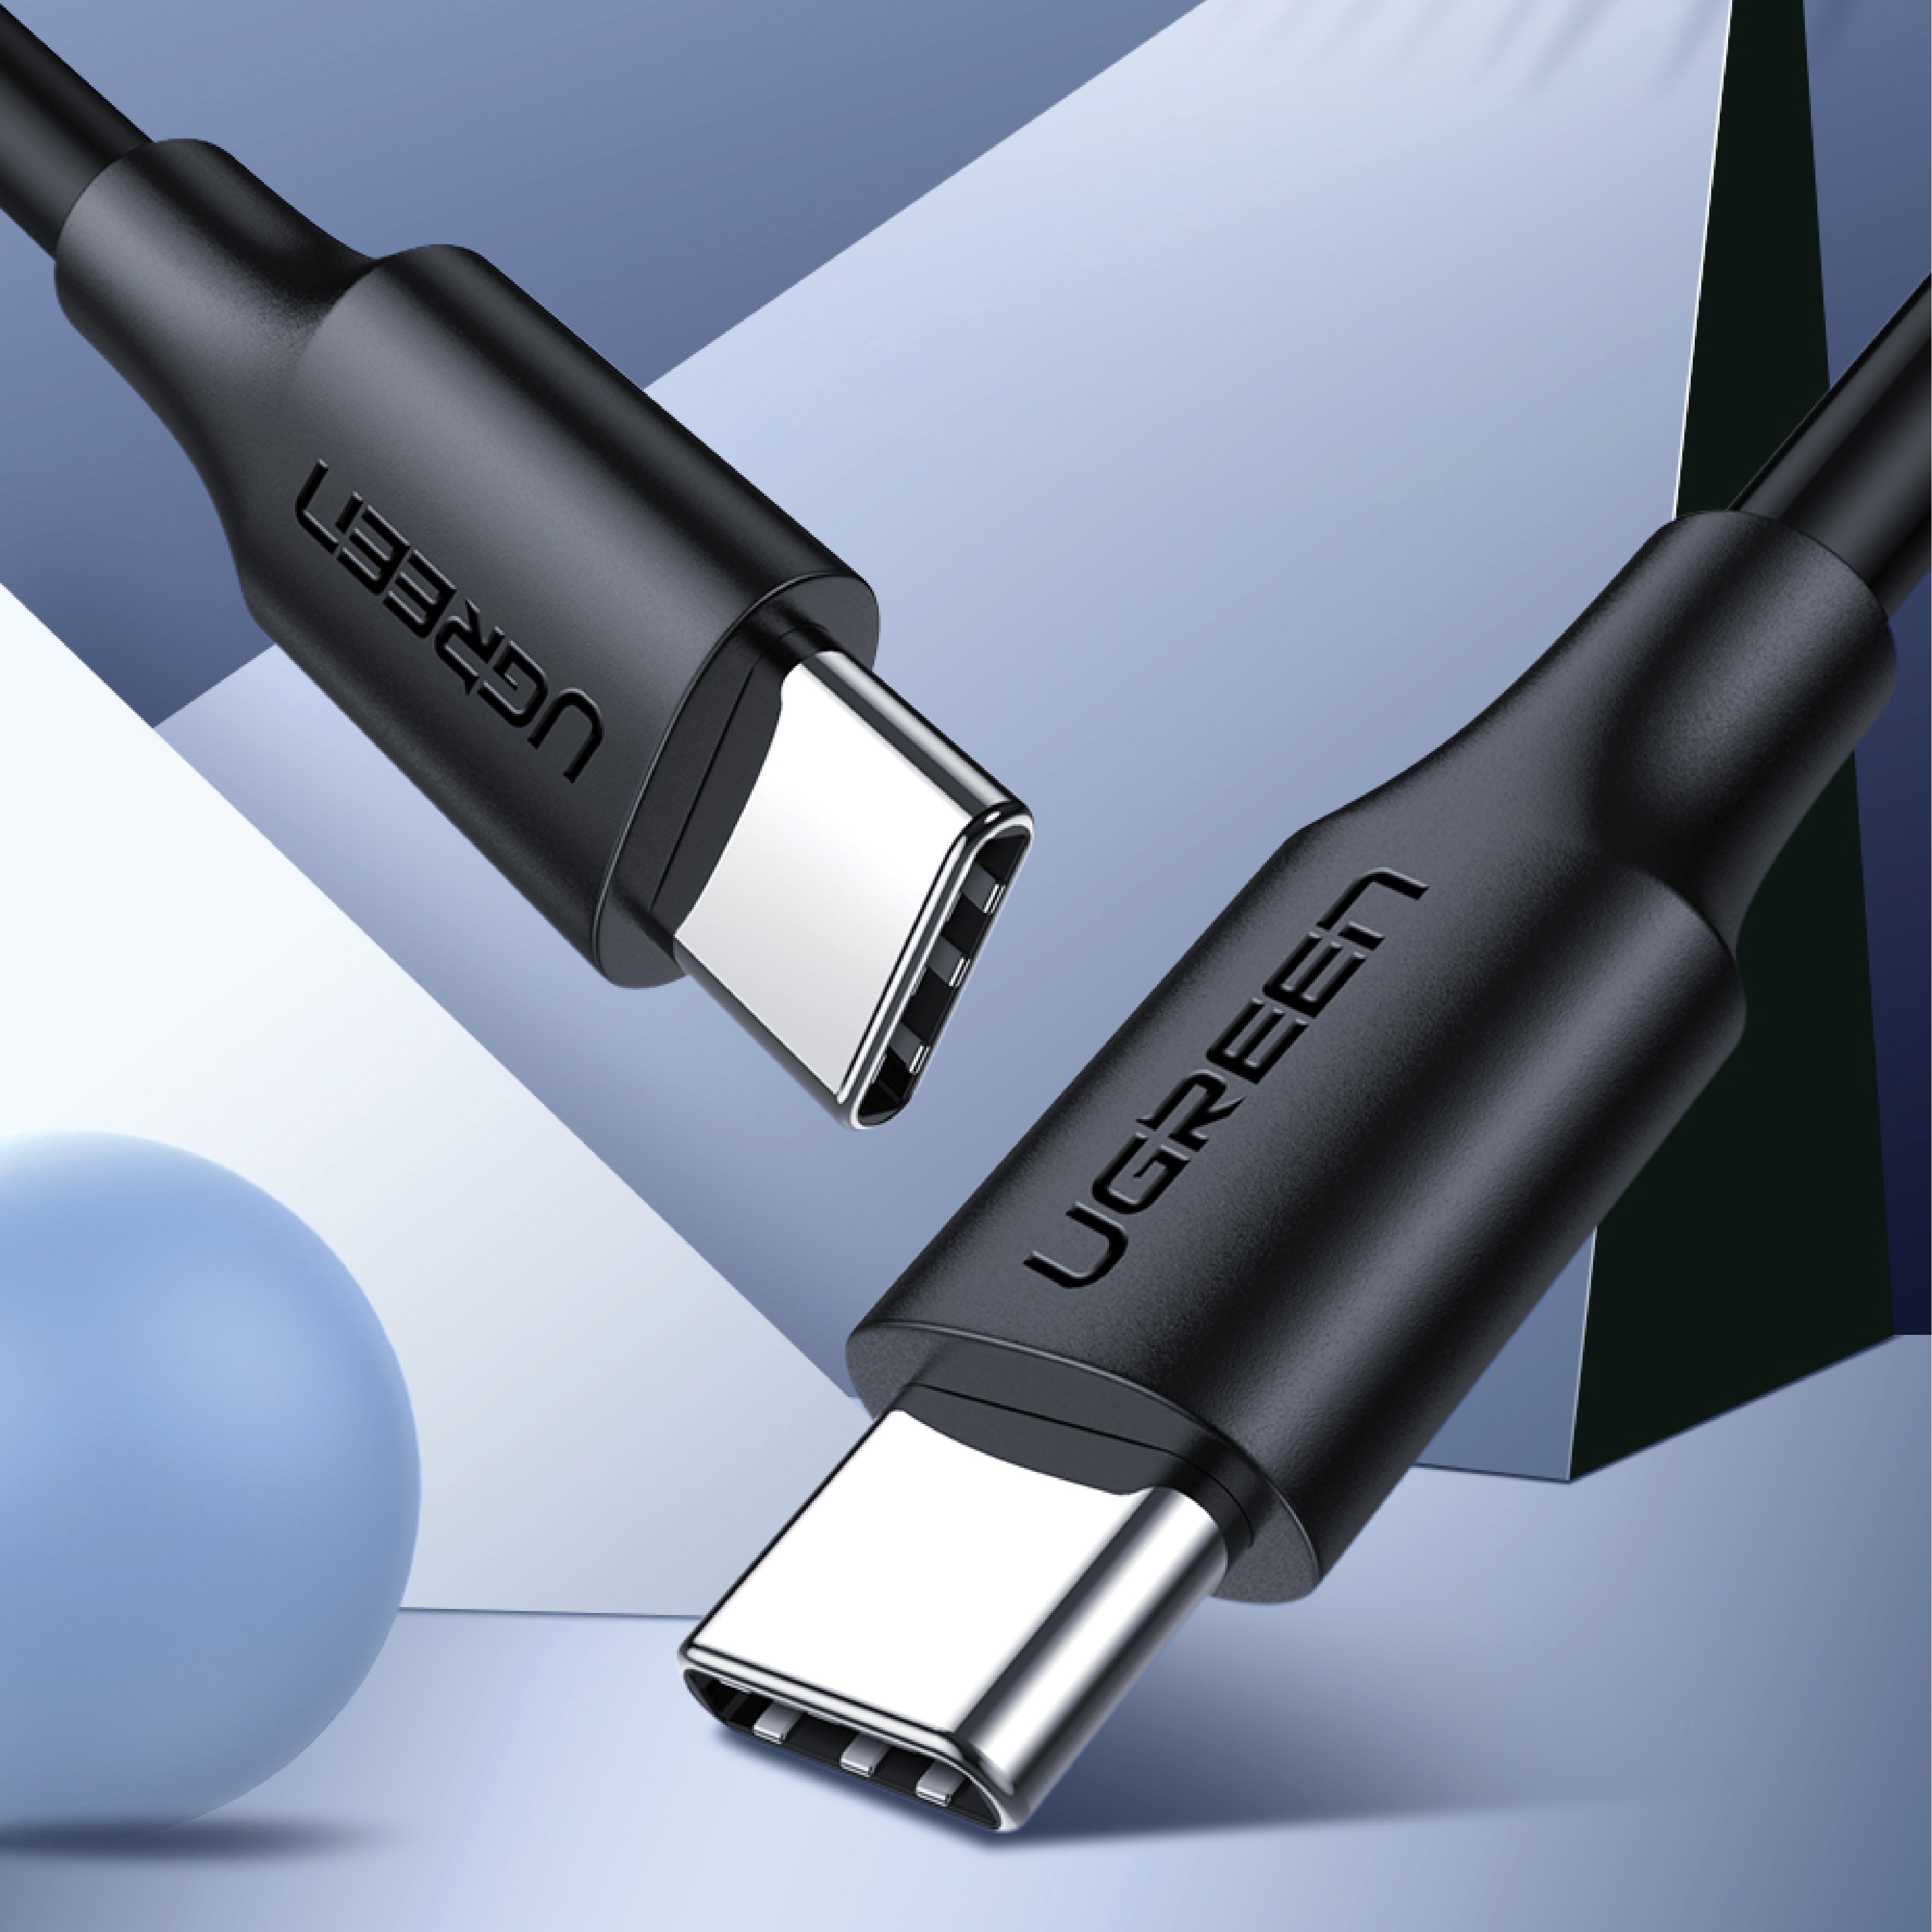 Cáp sạc nhanh UGREEN US287 USB 2.0 sang USB Type-C, điện áp 3A, độ dài từ 0.25m đến 2m  - Hàng chính hãng